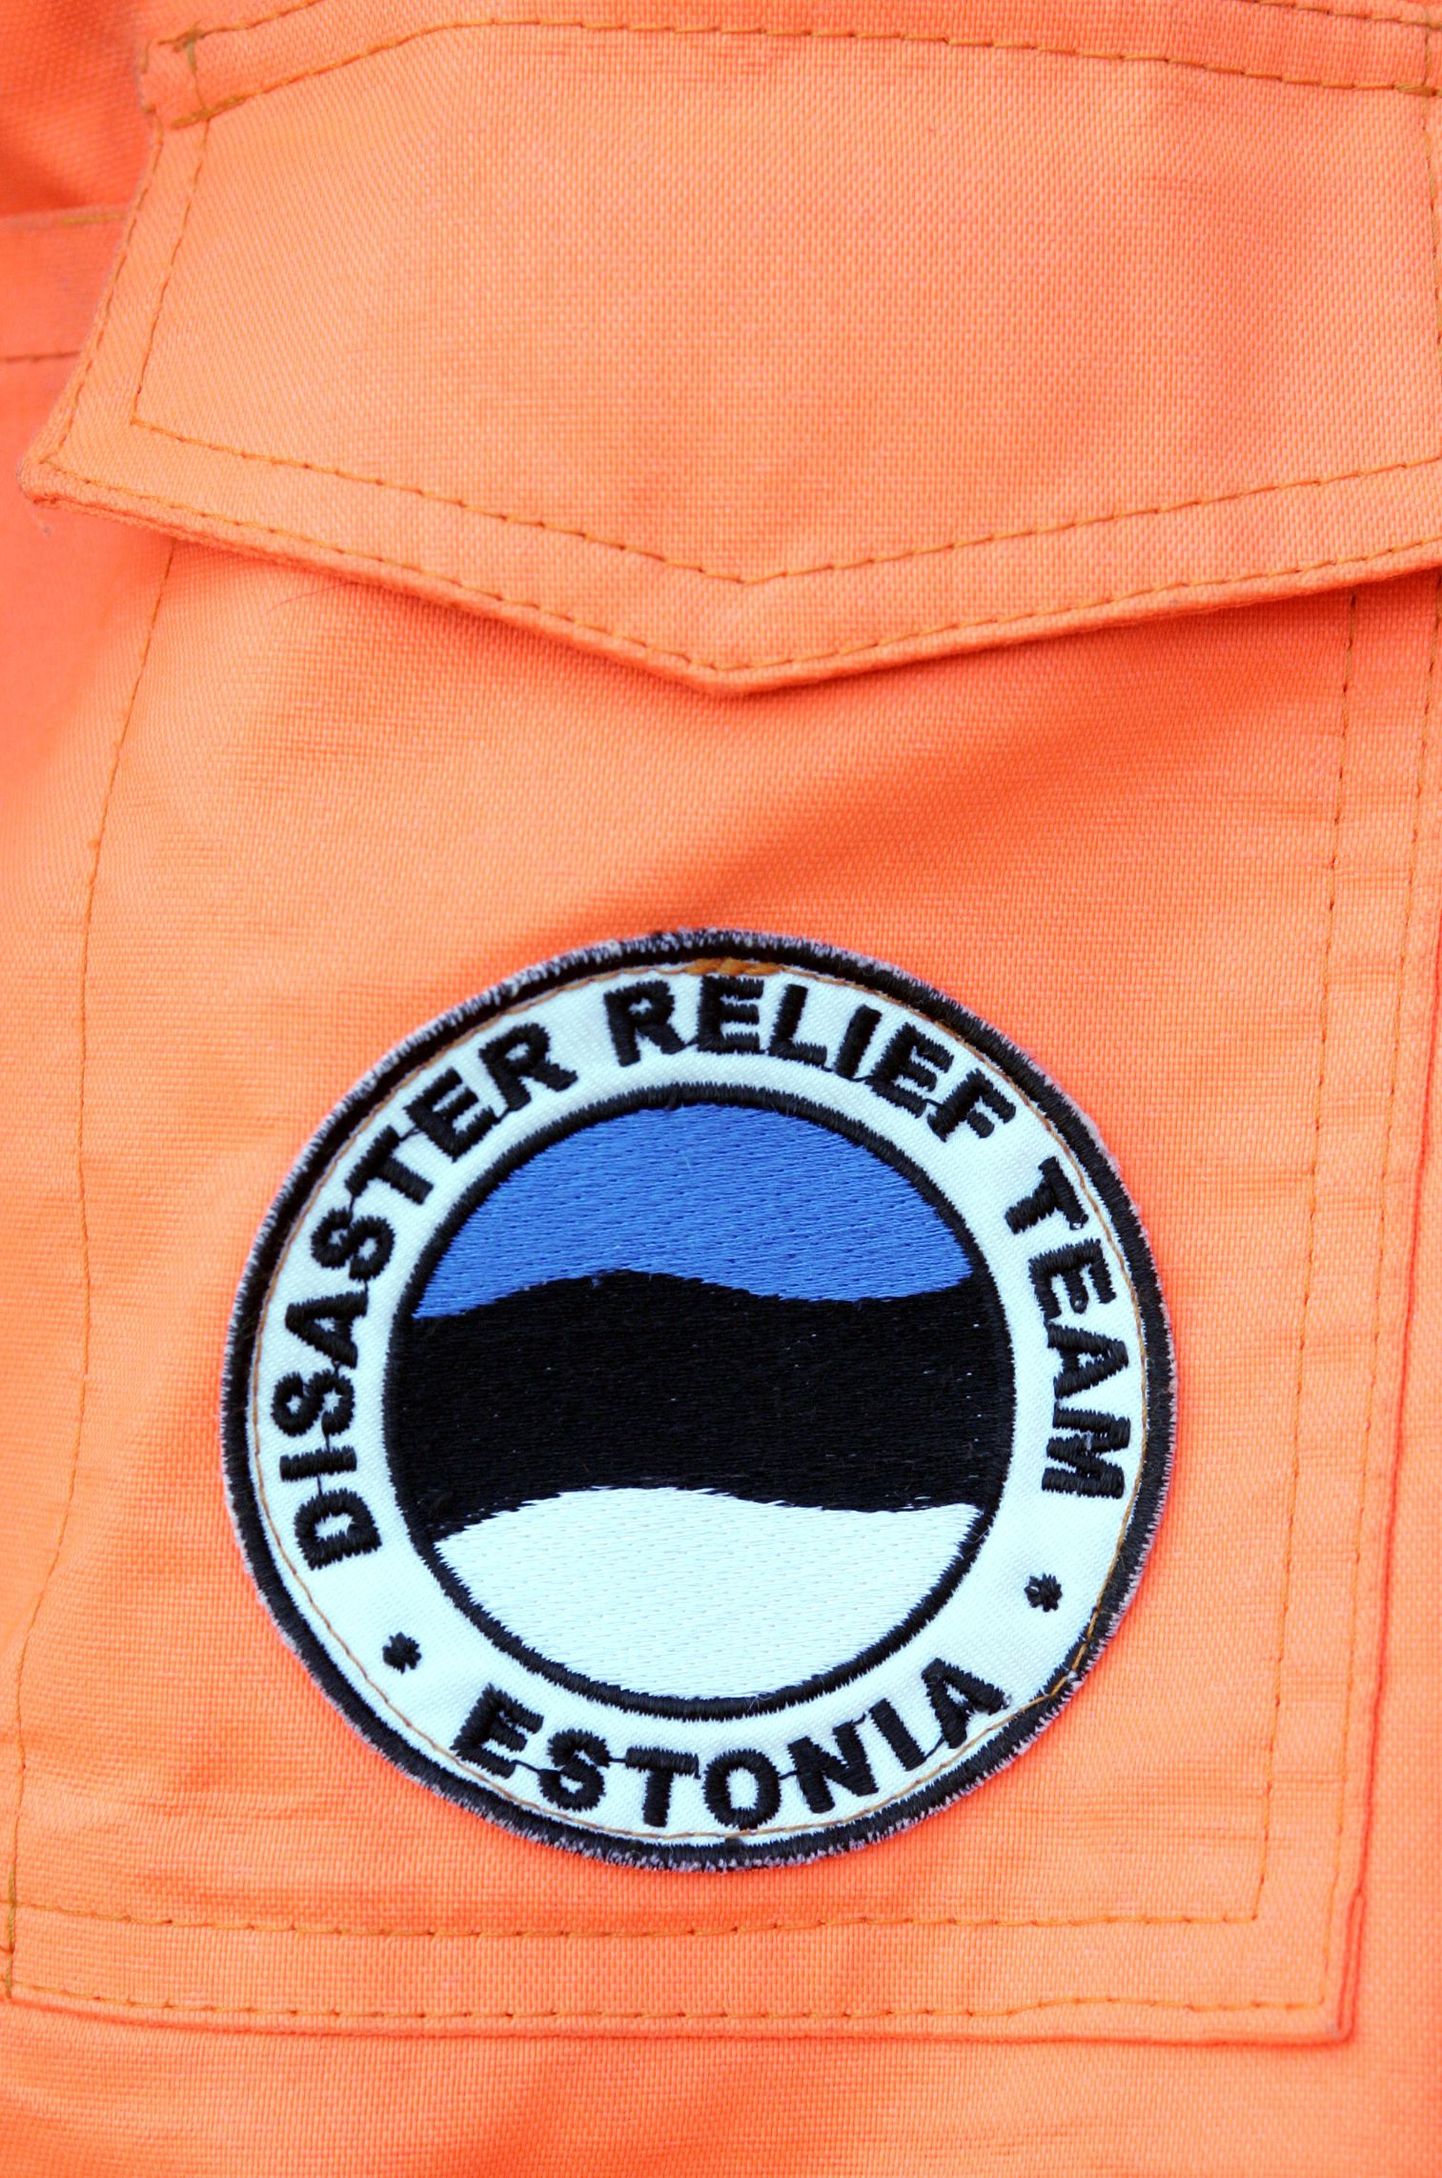 ÜRO palvel läheb hädalistele appi Eesti päästemeeskonna vabatahtlikud. Pildil Eesti päästemeeskonna logo.